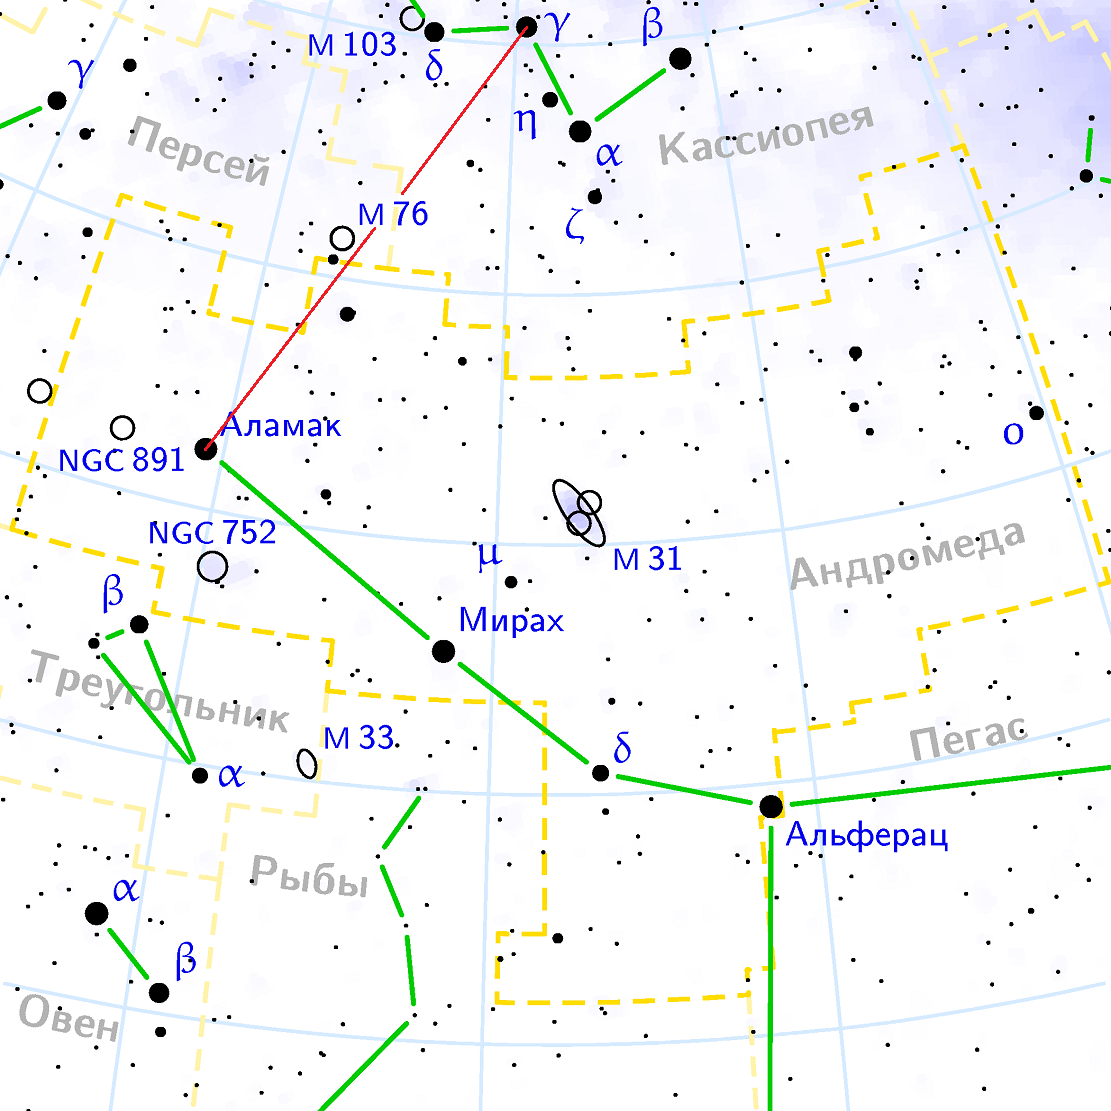 Положение туманности M76 относительно созвездий Перскй, Кассиопея и Андромеда